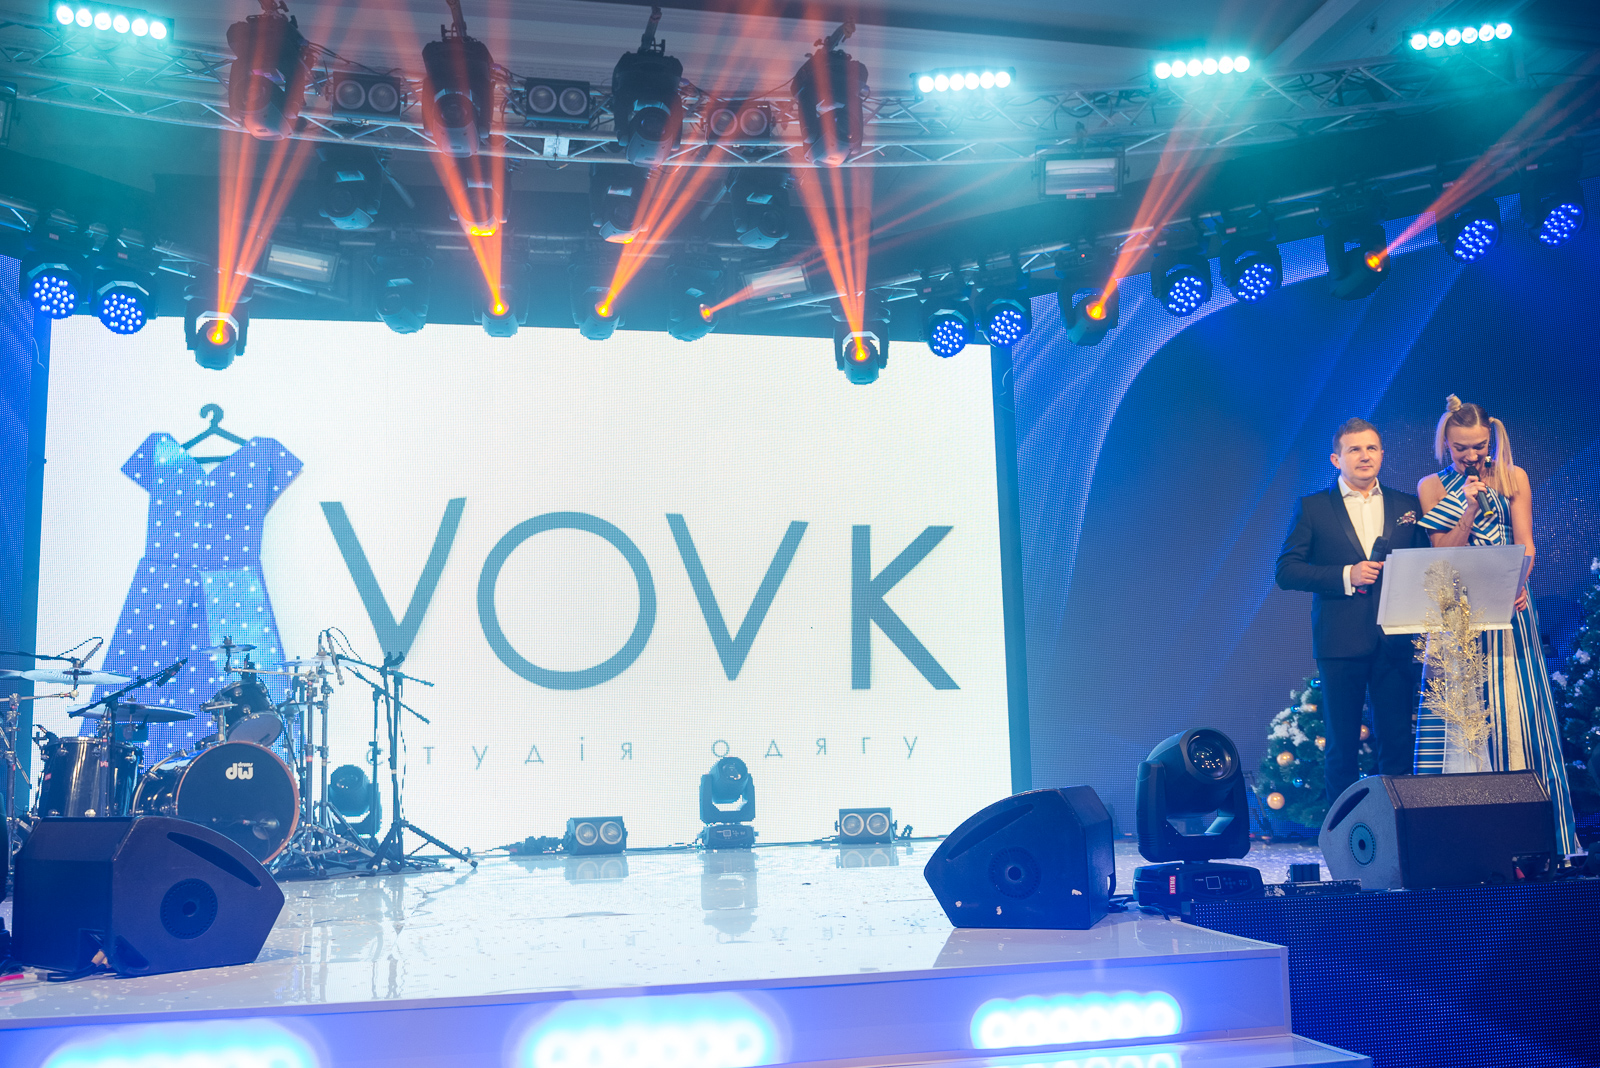 Кто он: Лучший бренд одежды по мнению украинского потребителя VOVK одежда, премия выбор года